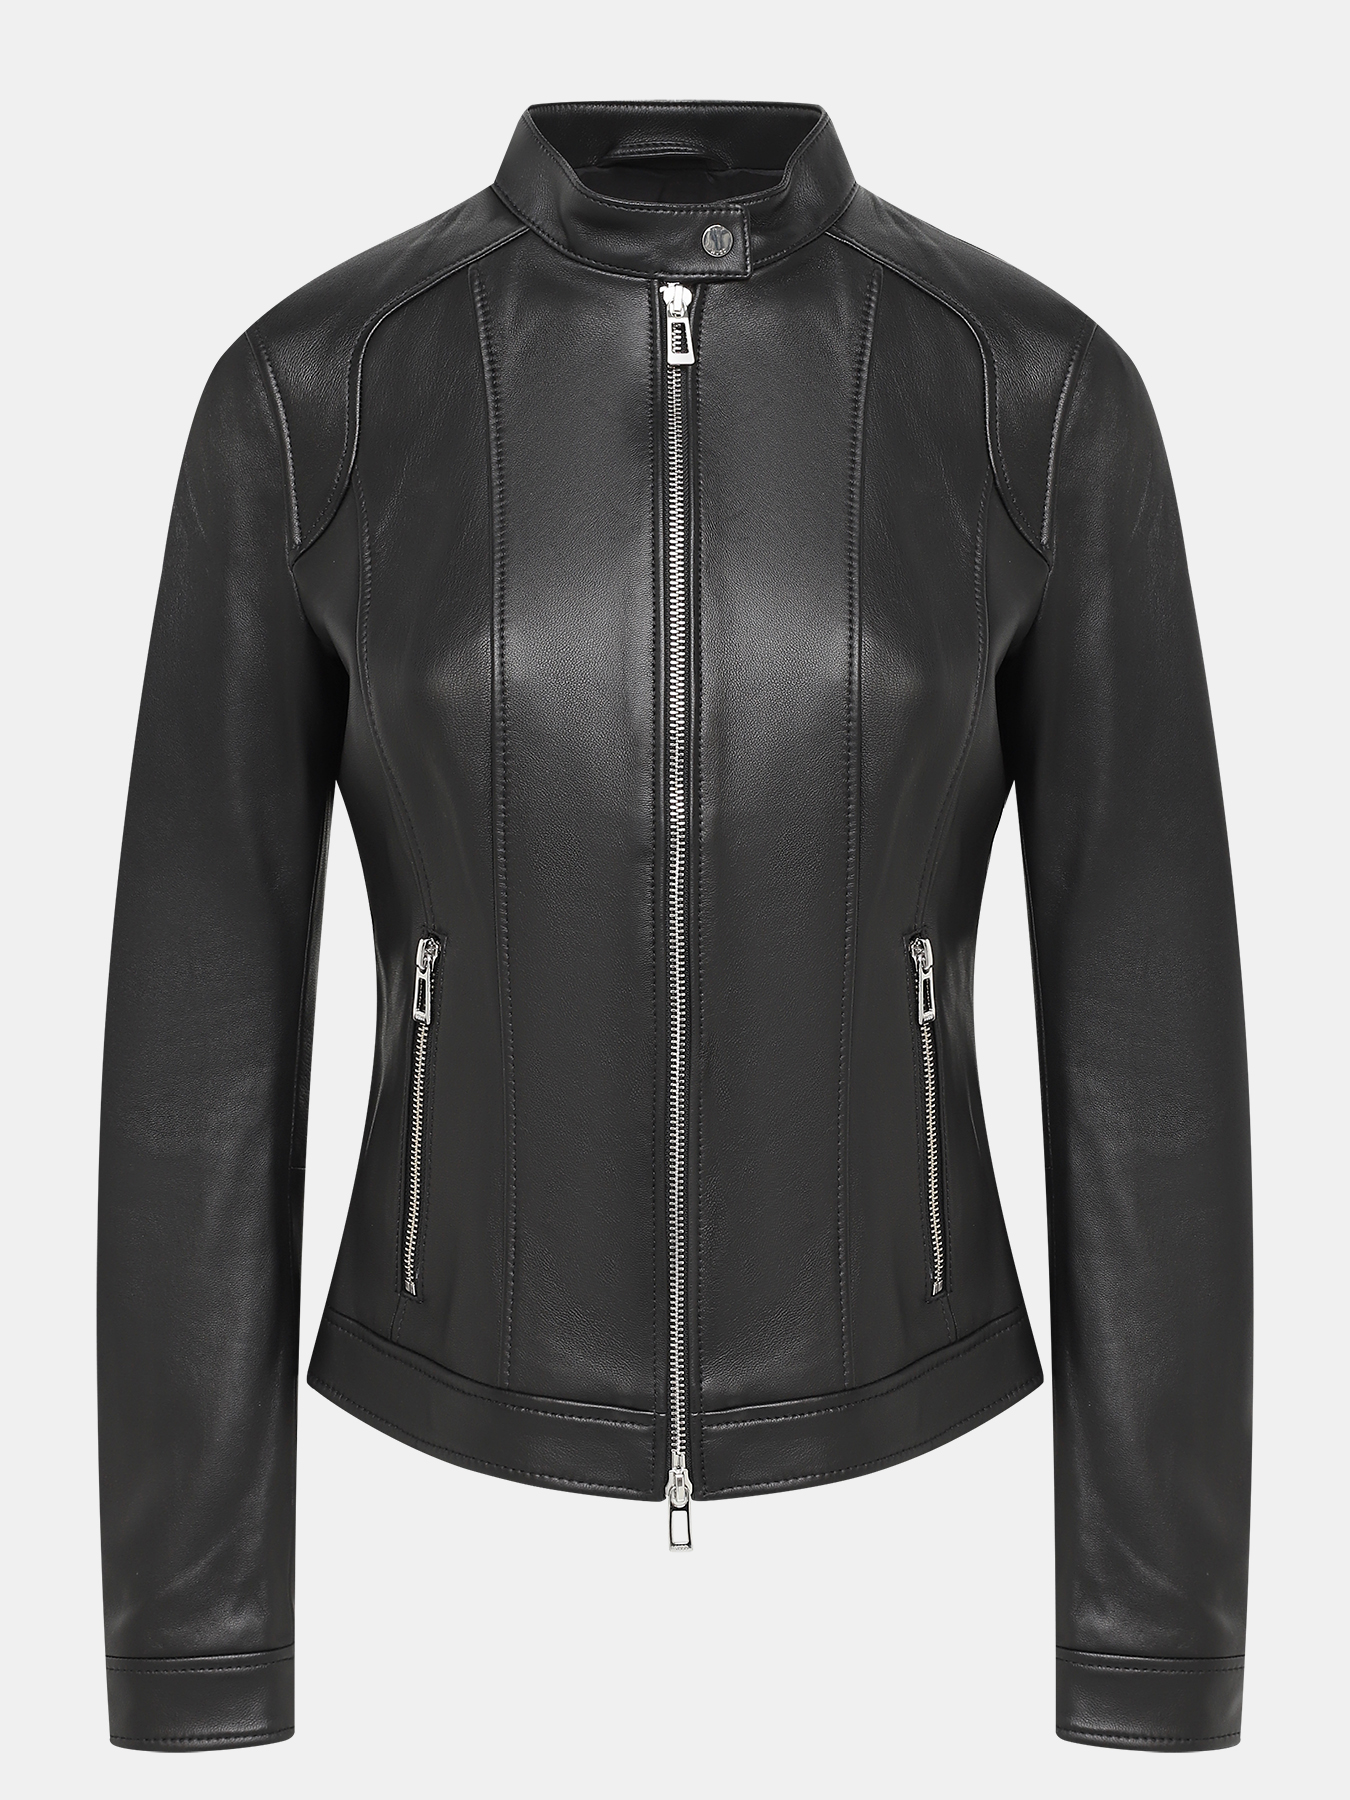 Кожаная куртка Ladias HUGO 415867-041, цвет черный, размер 40-42